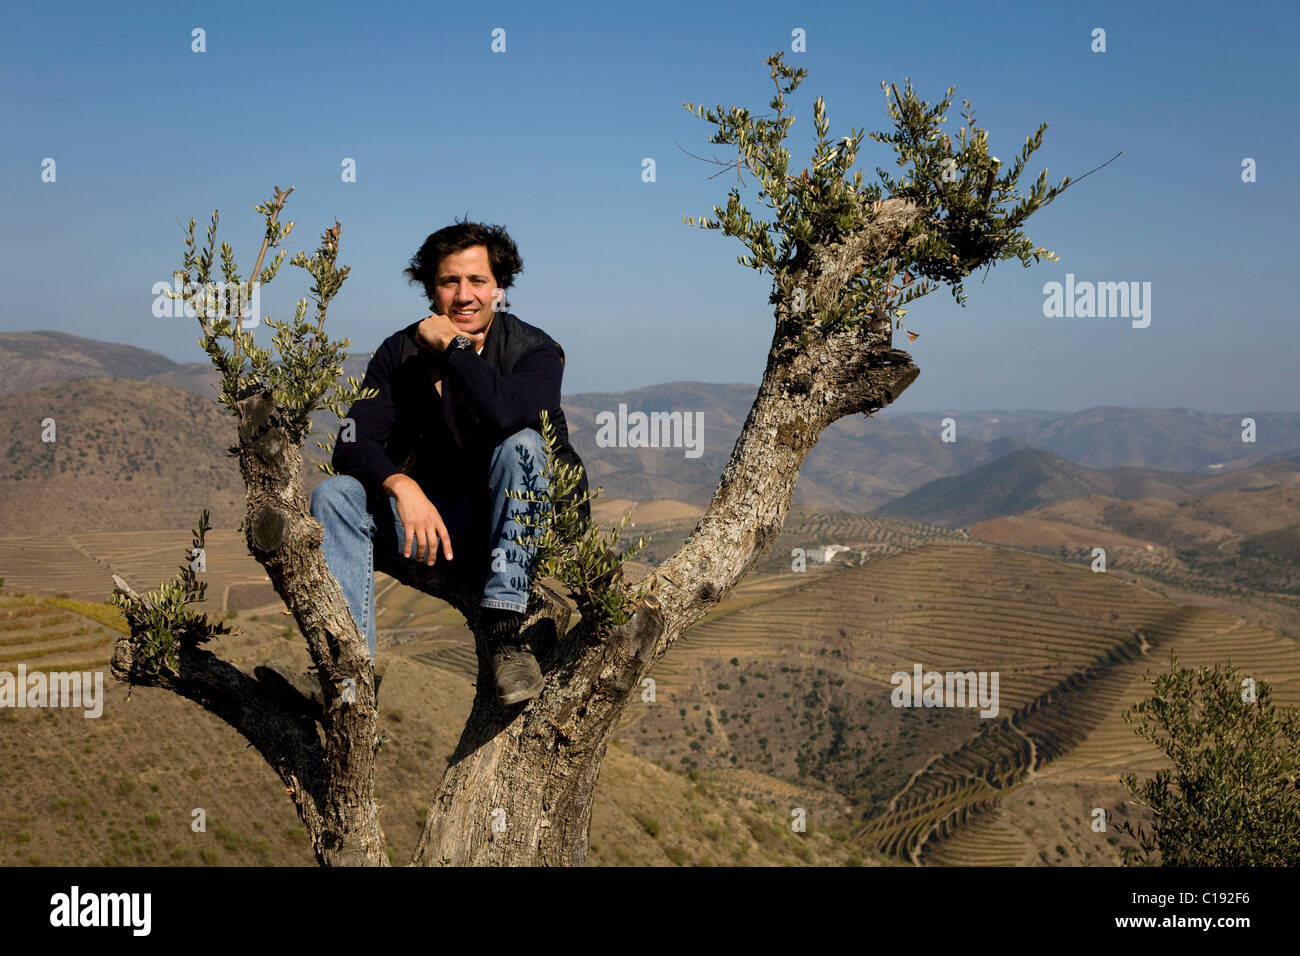 Filipe Madeira, Capo dell'olio d'oliva da CARM, seduto su un albero, Douro superior, area nord del Portogallo, Portogallo, Europa Foto Stock